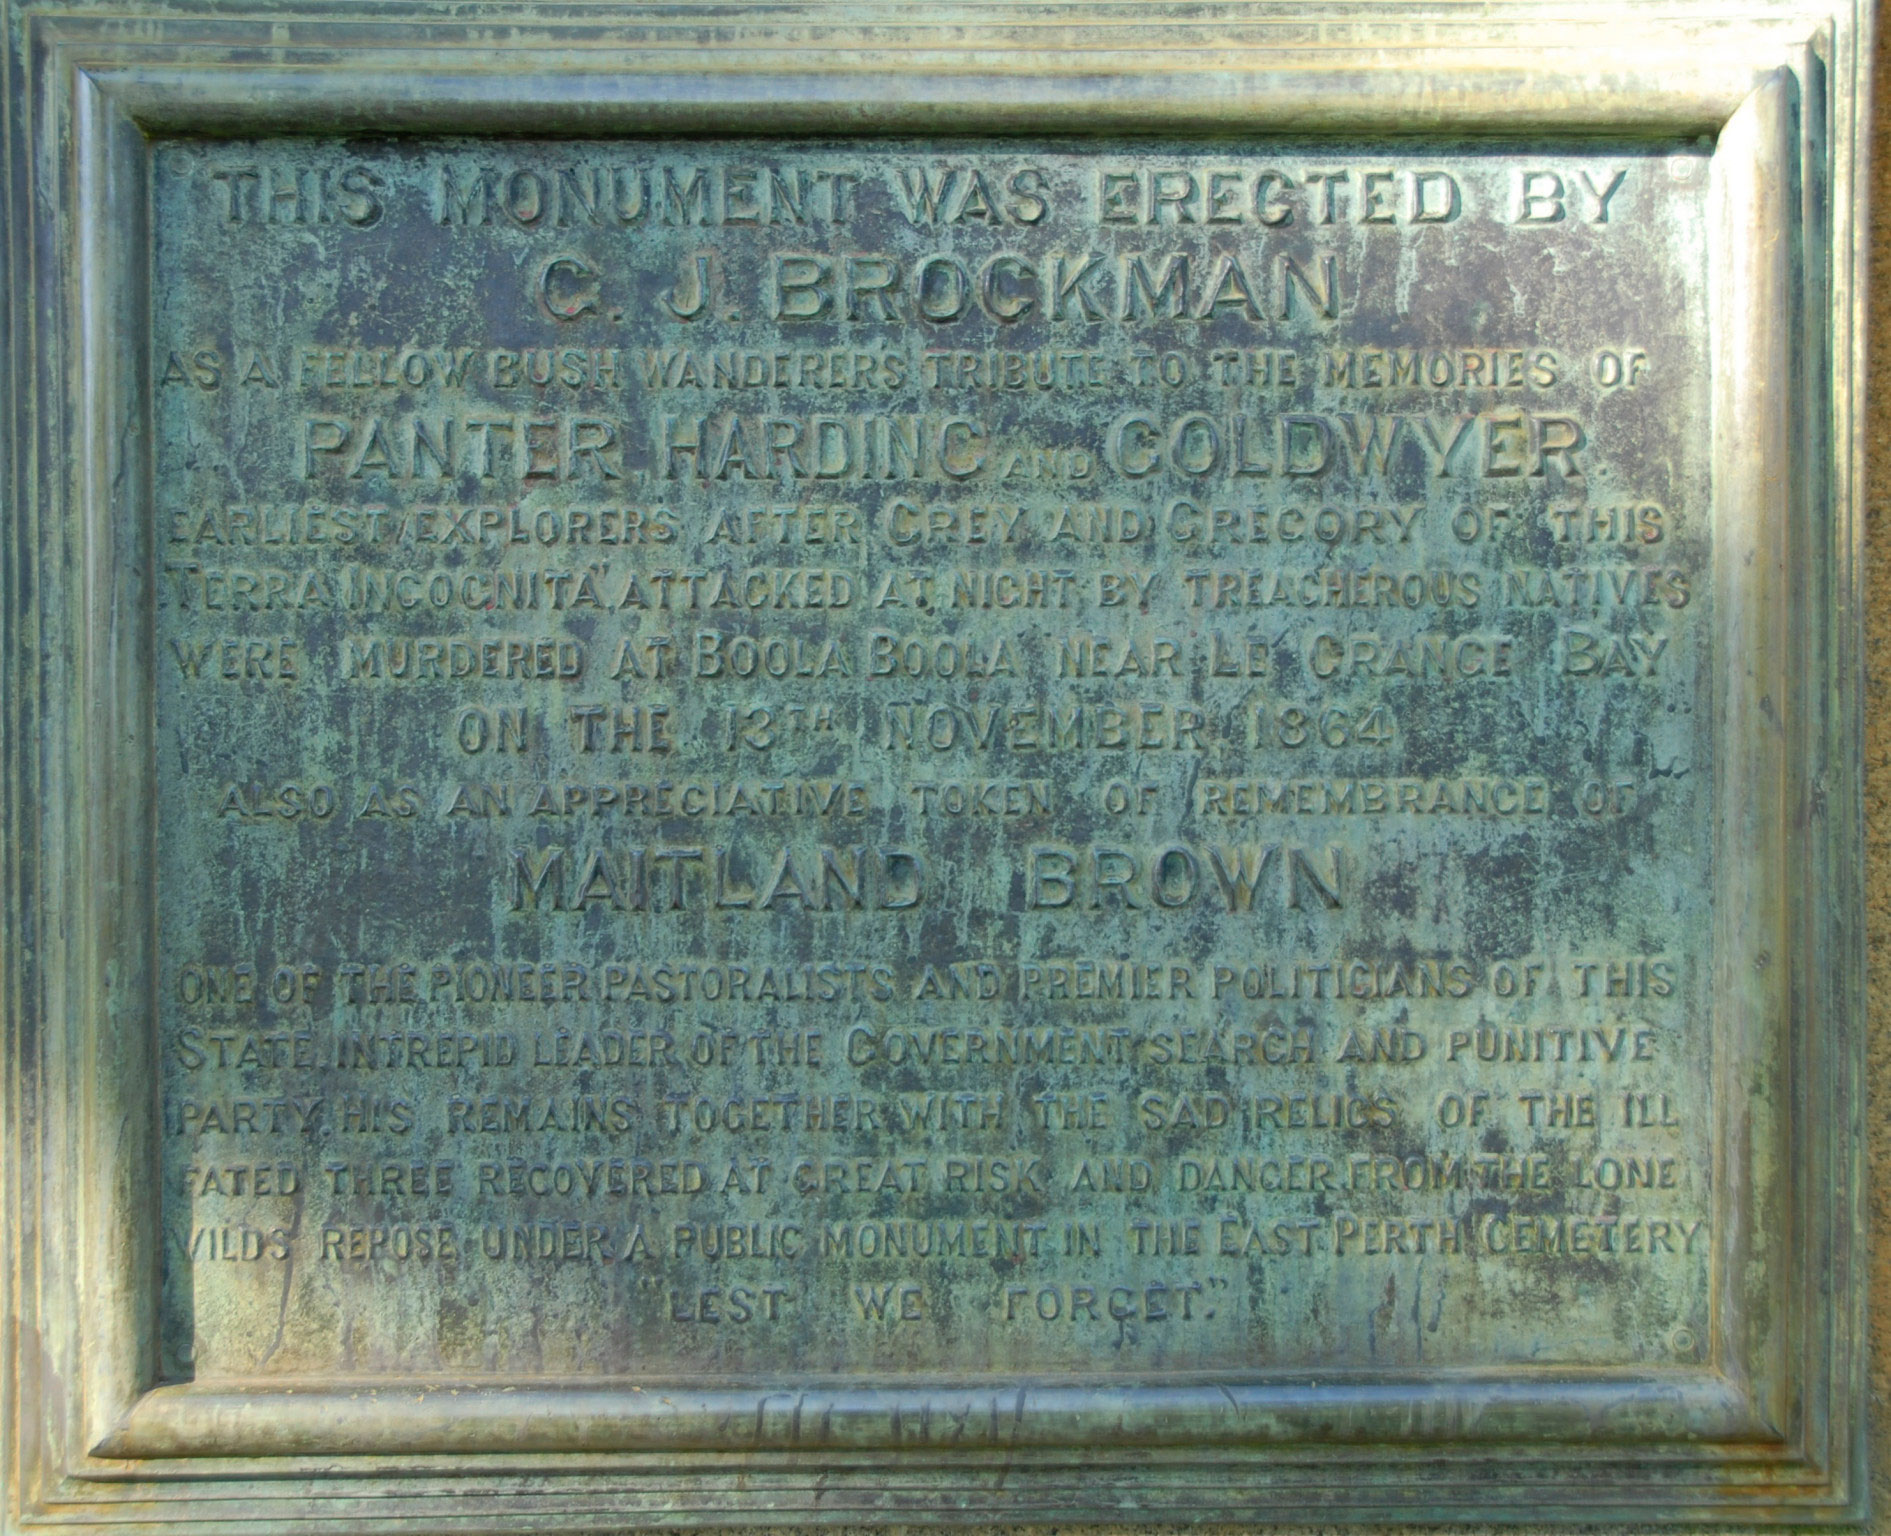 Original 1913 plaque on the Explorers’ Monument in Esplanade Park, Fremantle, Western Australia